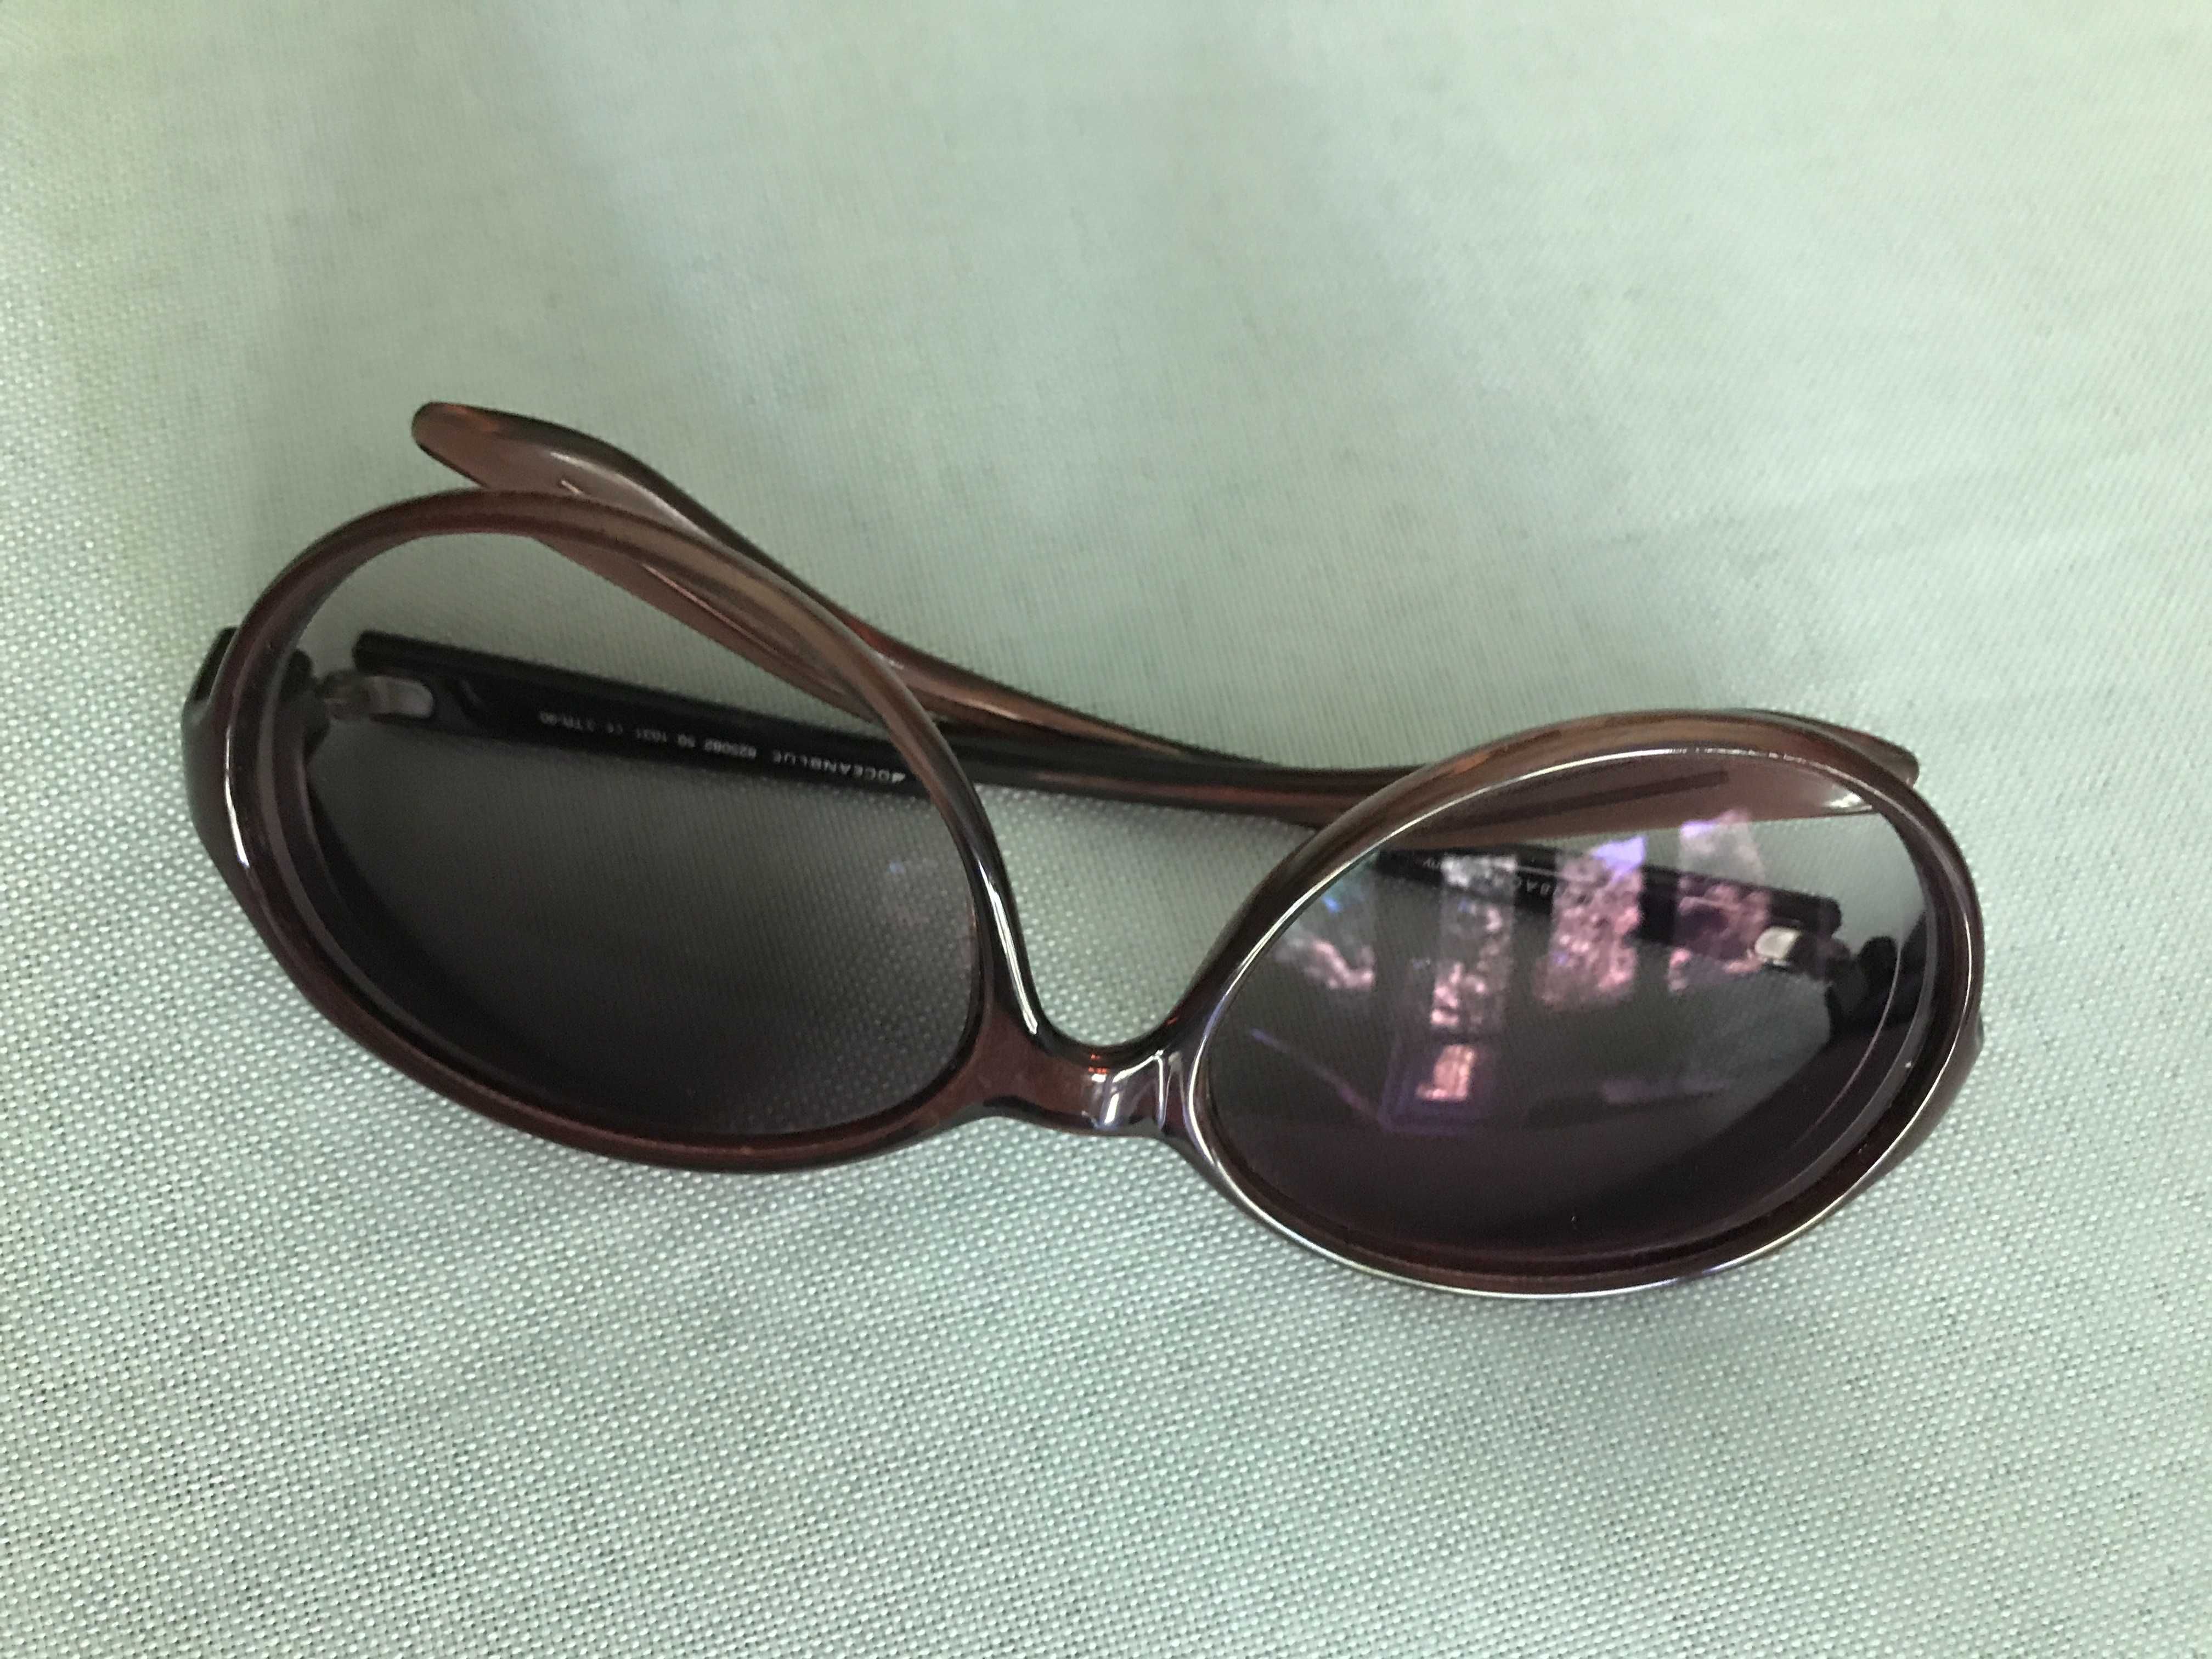 НОВО Диоптрични слънчеви очила /cтъкла ZEISS -4 D/ PD 59